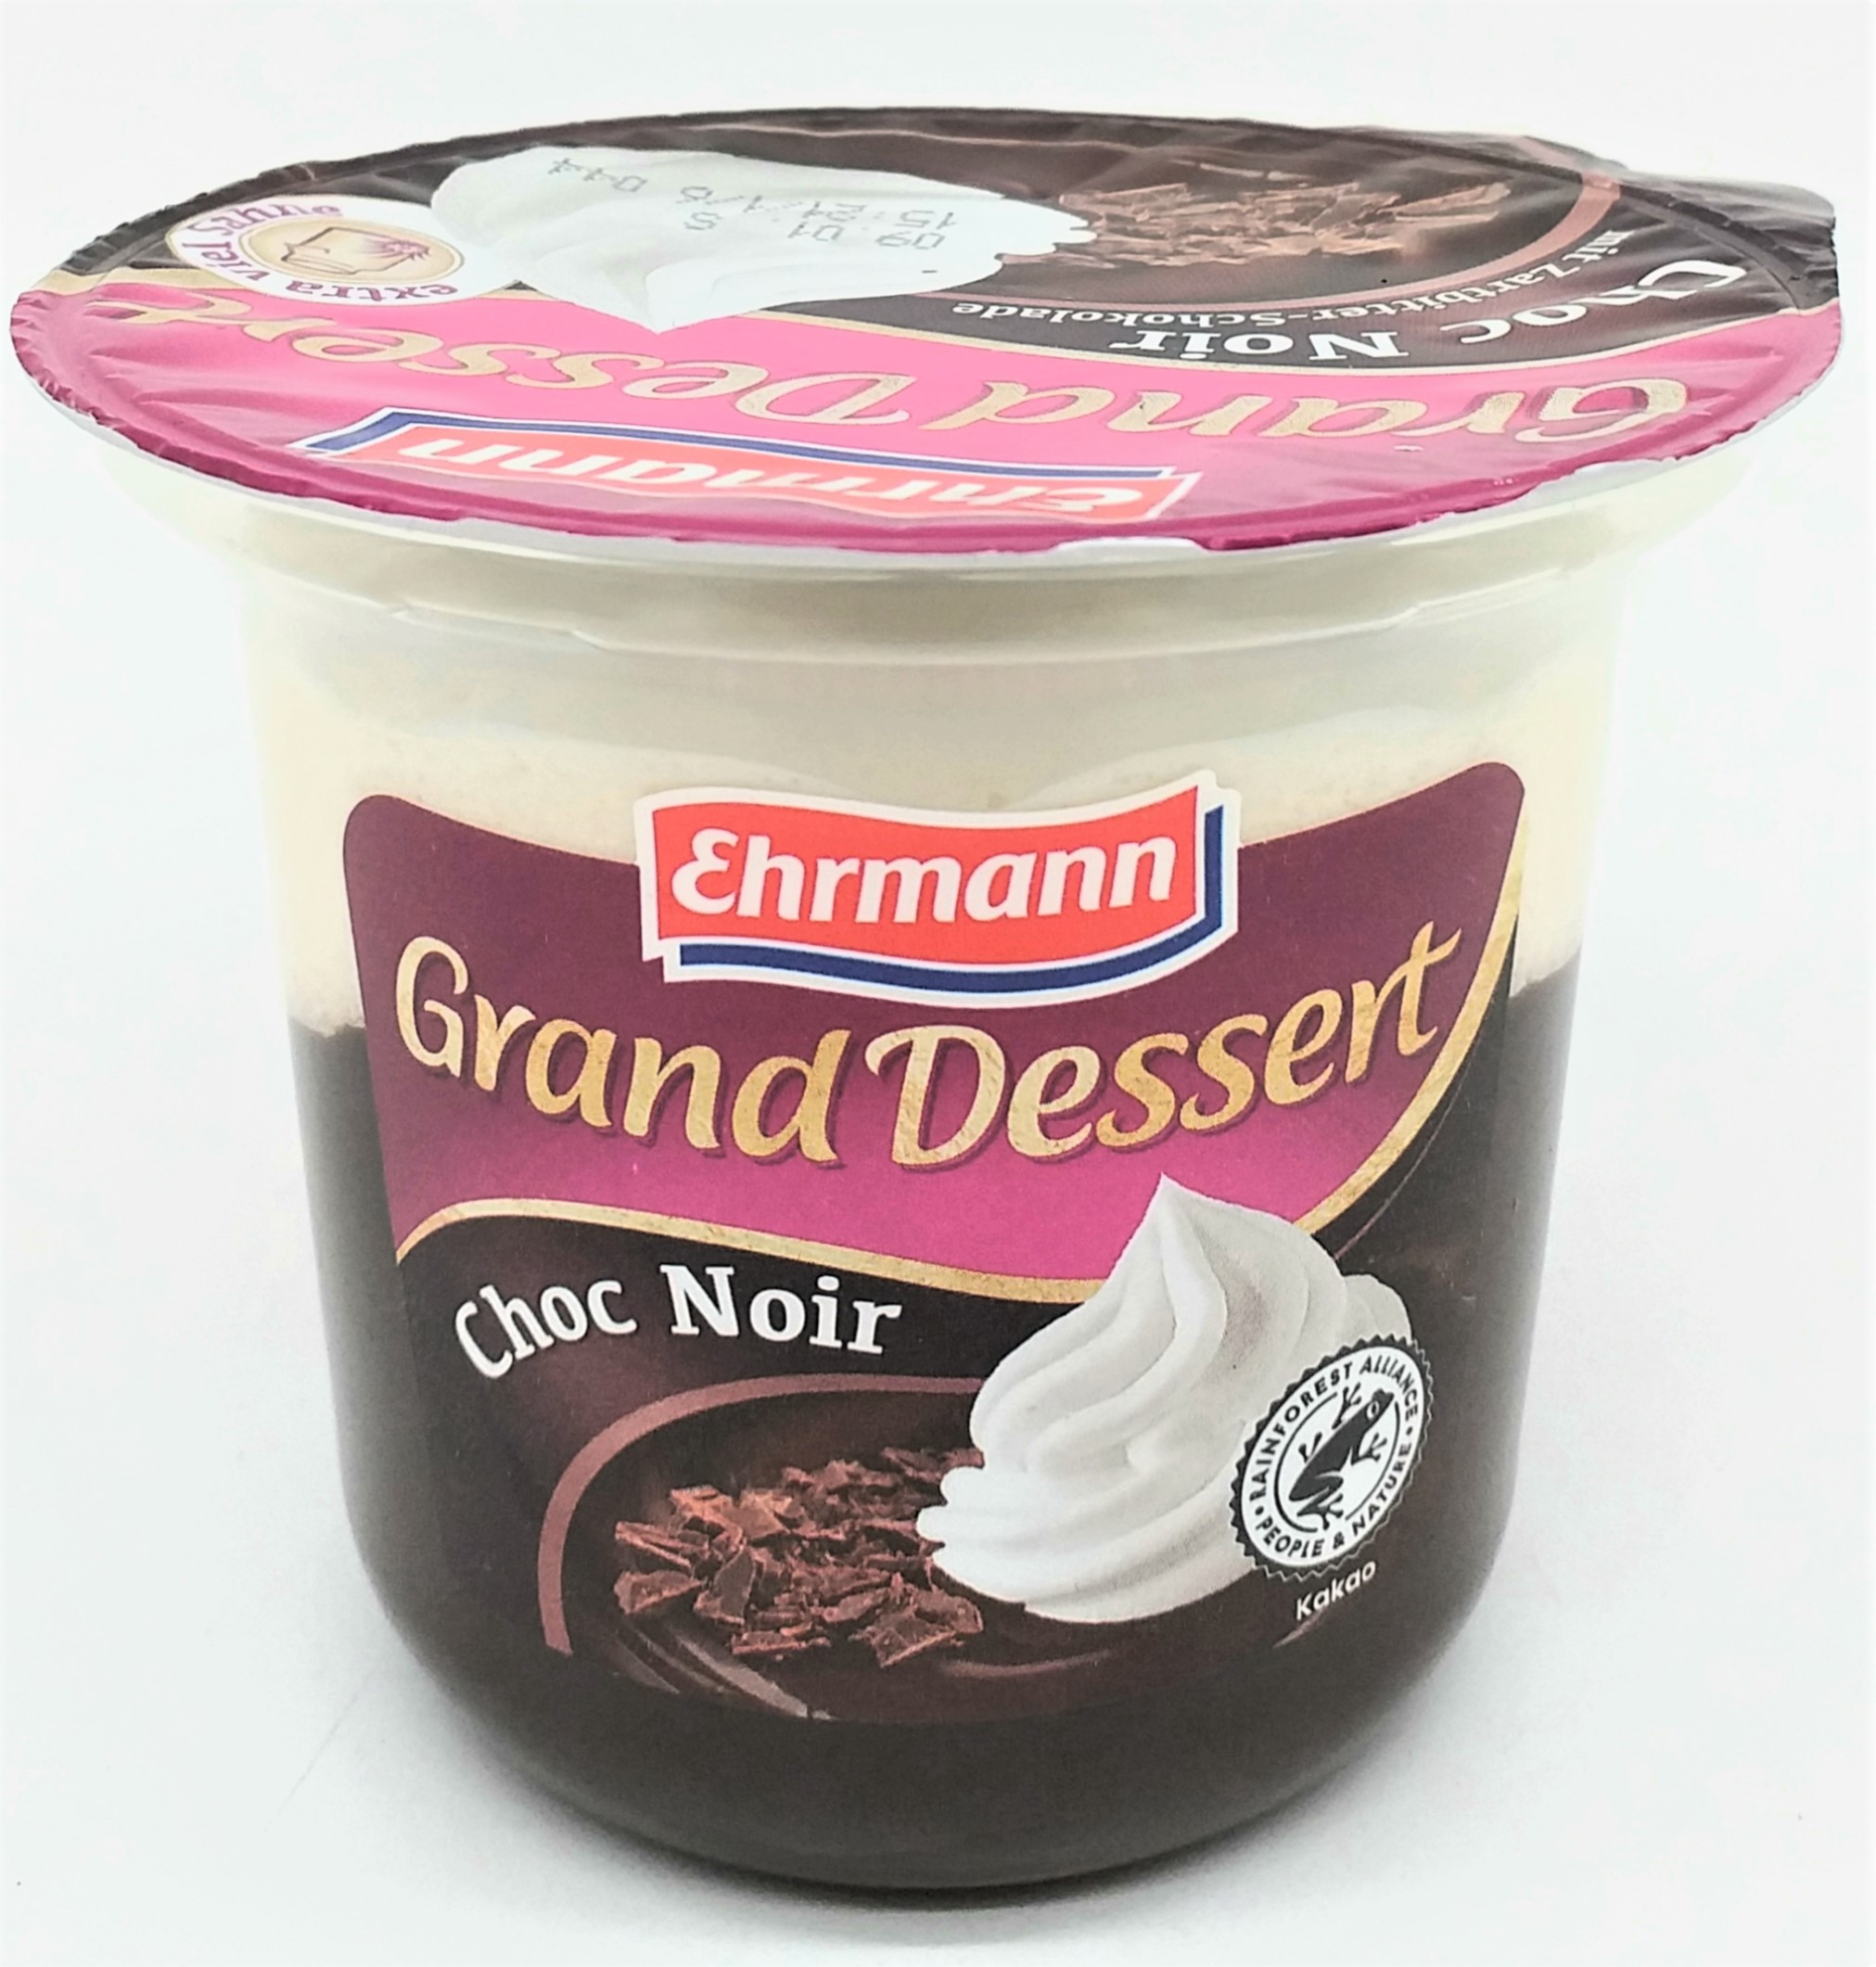 Ehrmann Grand Dessert Choc Noir 190g